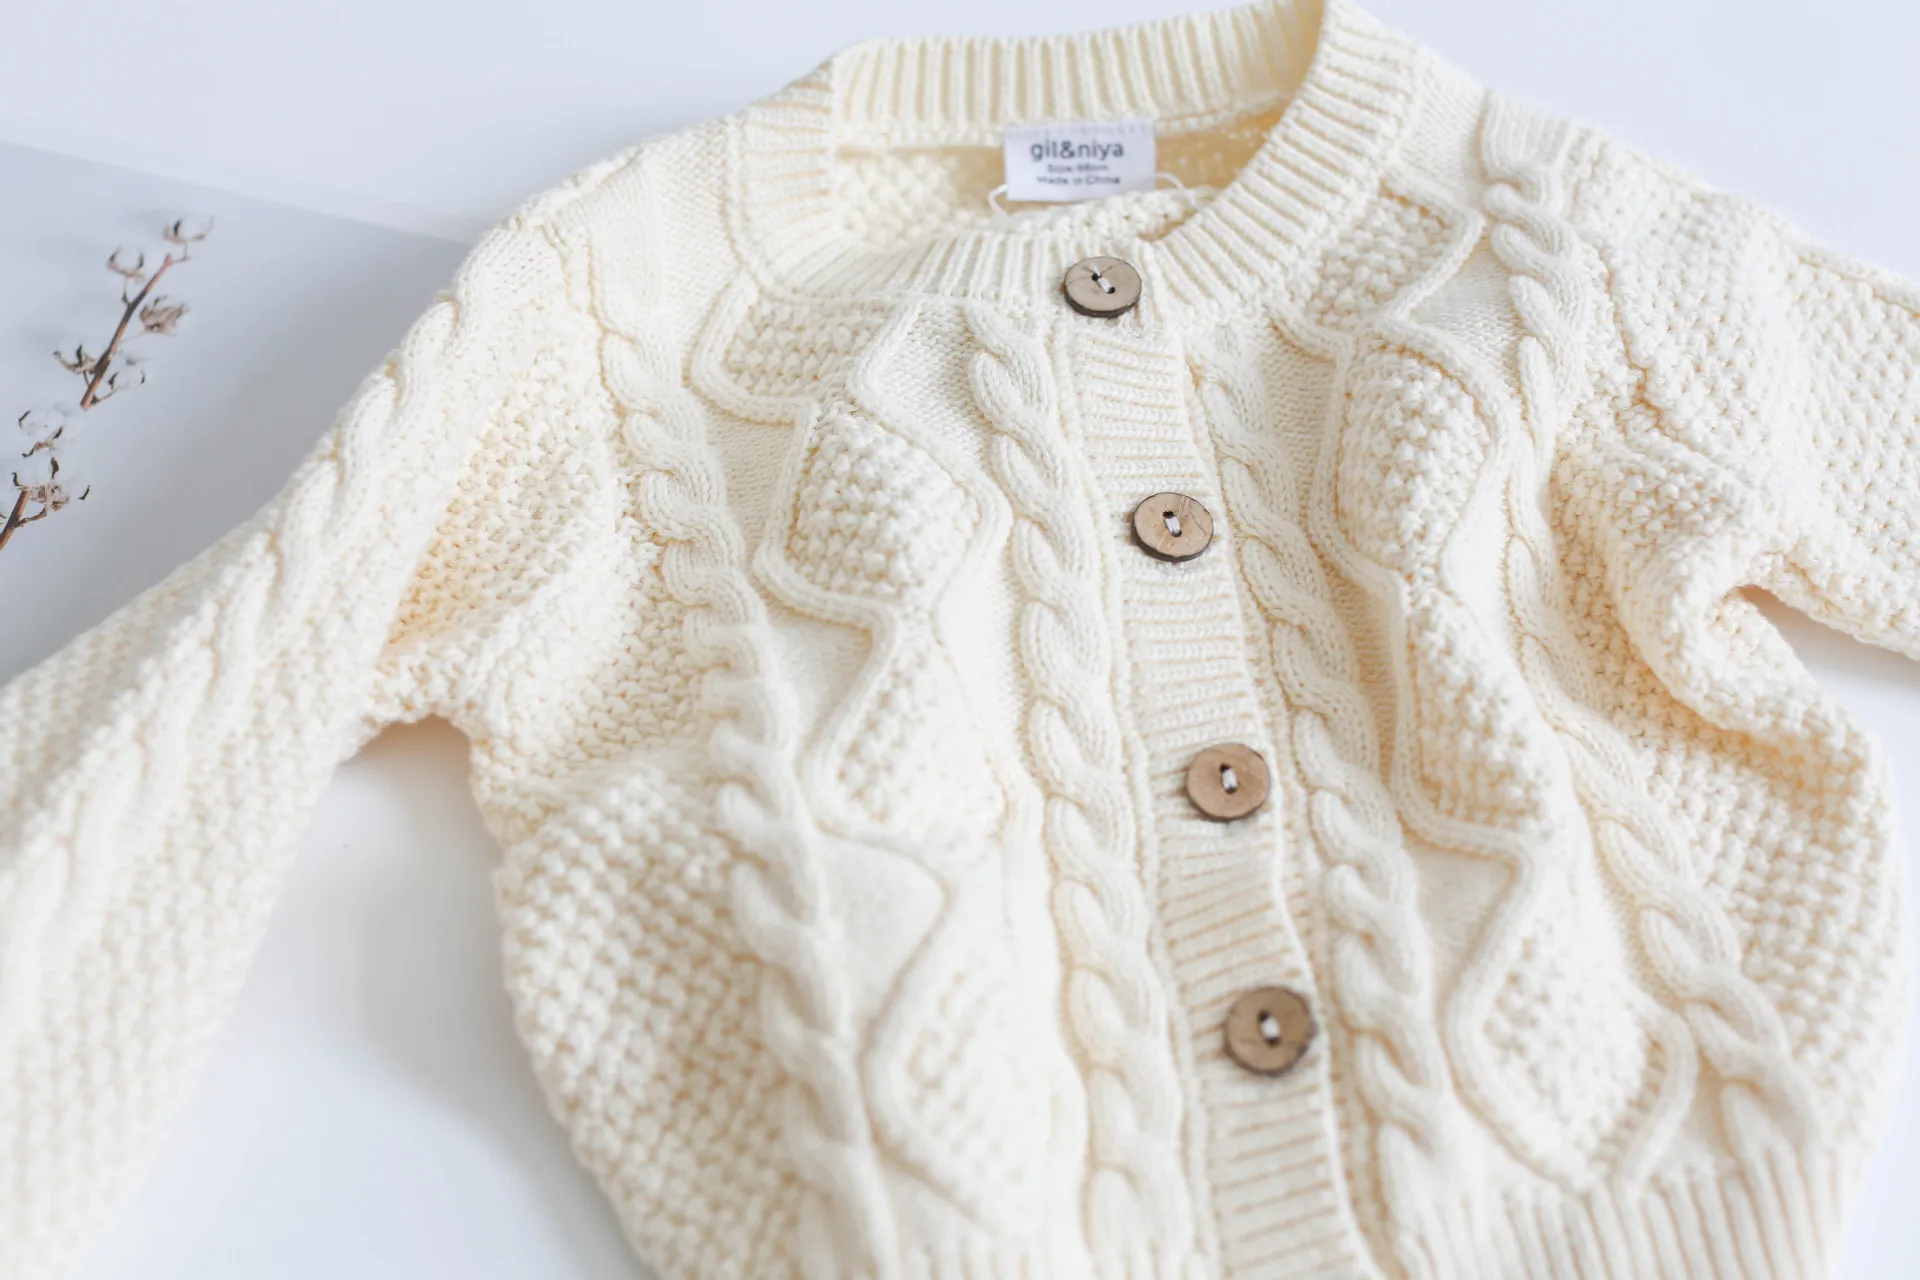 Хлопковый свитер для маленьких мальчиков и девочек; вязаный кардиган+ шорты; Новинка года; осенне-зимняя детская одежда; комплект одежды для малышей